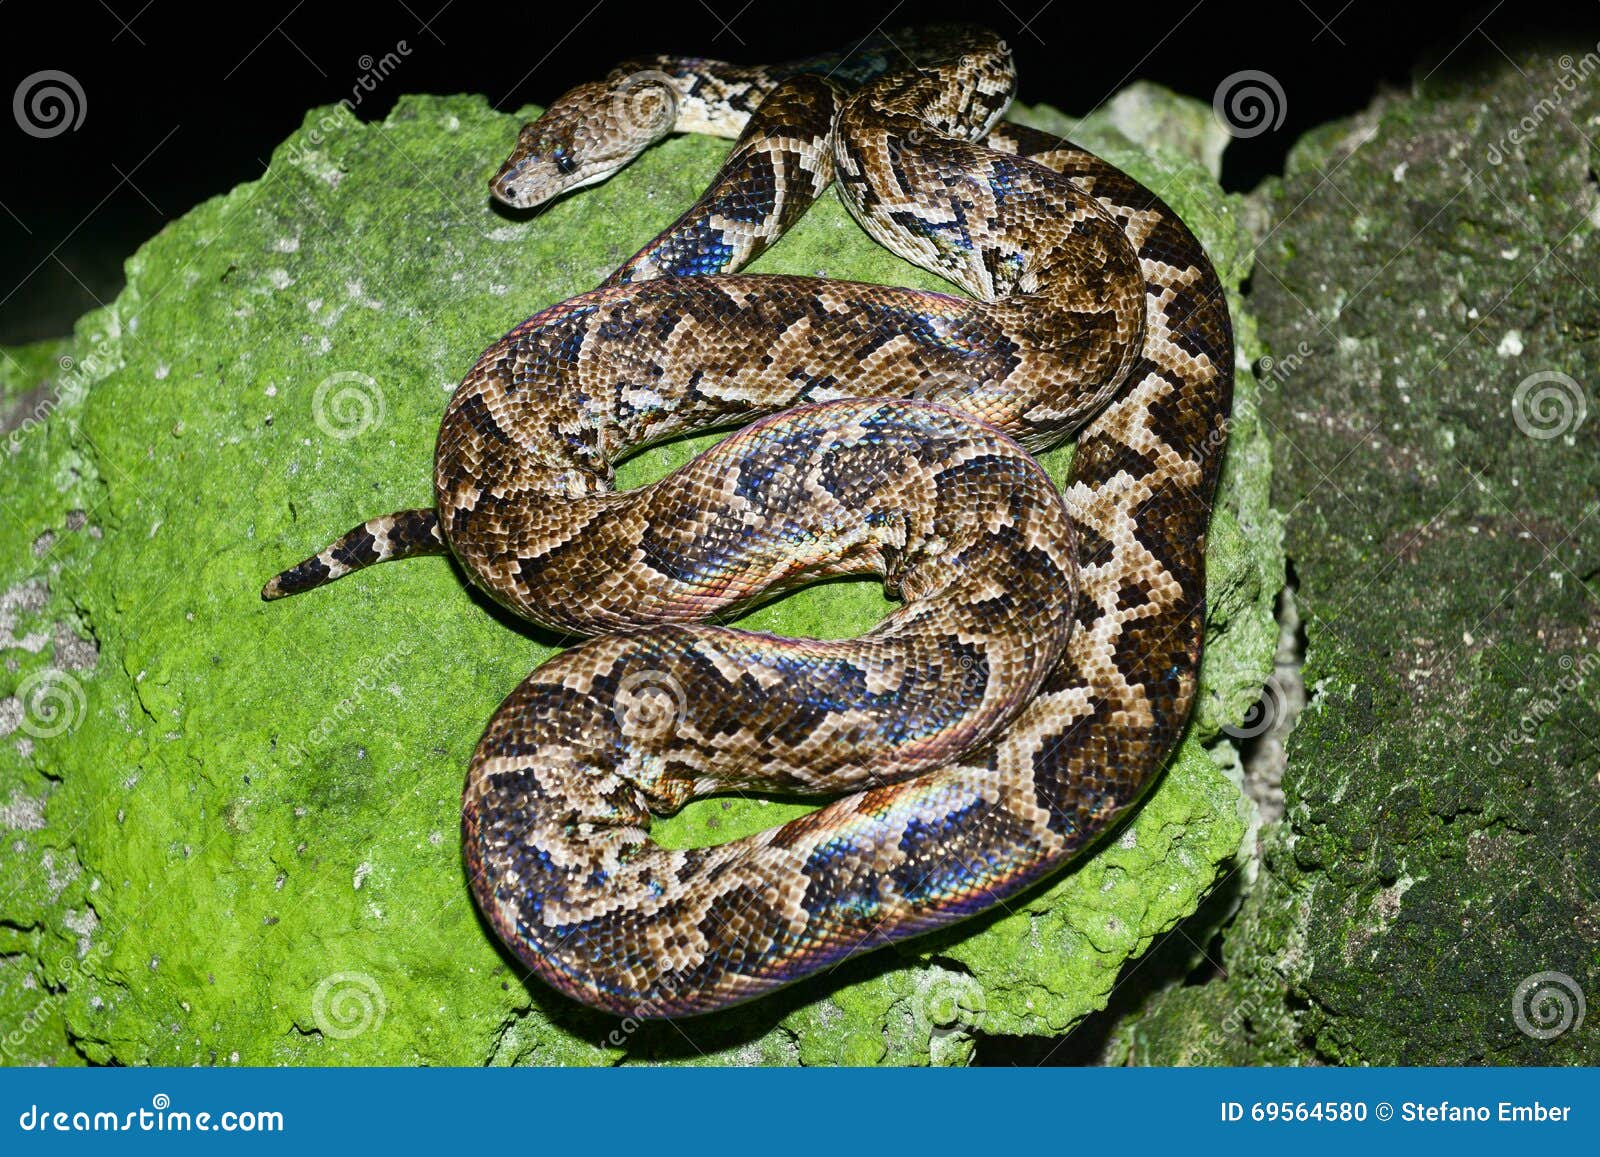 maja de santamaria snake on the forest of giron